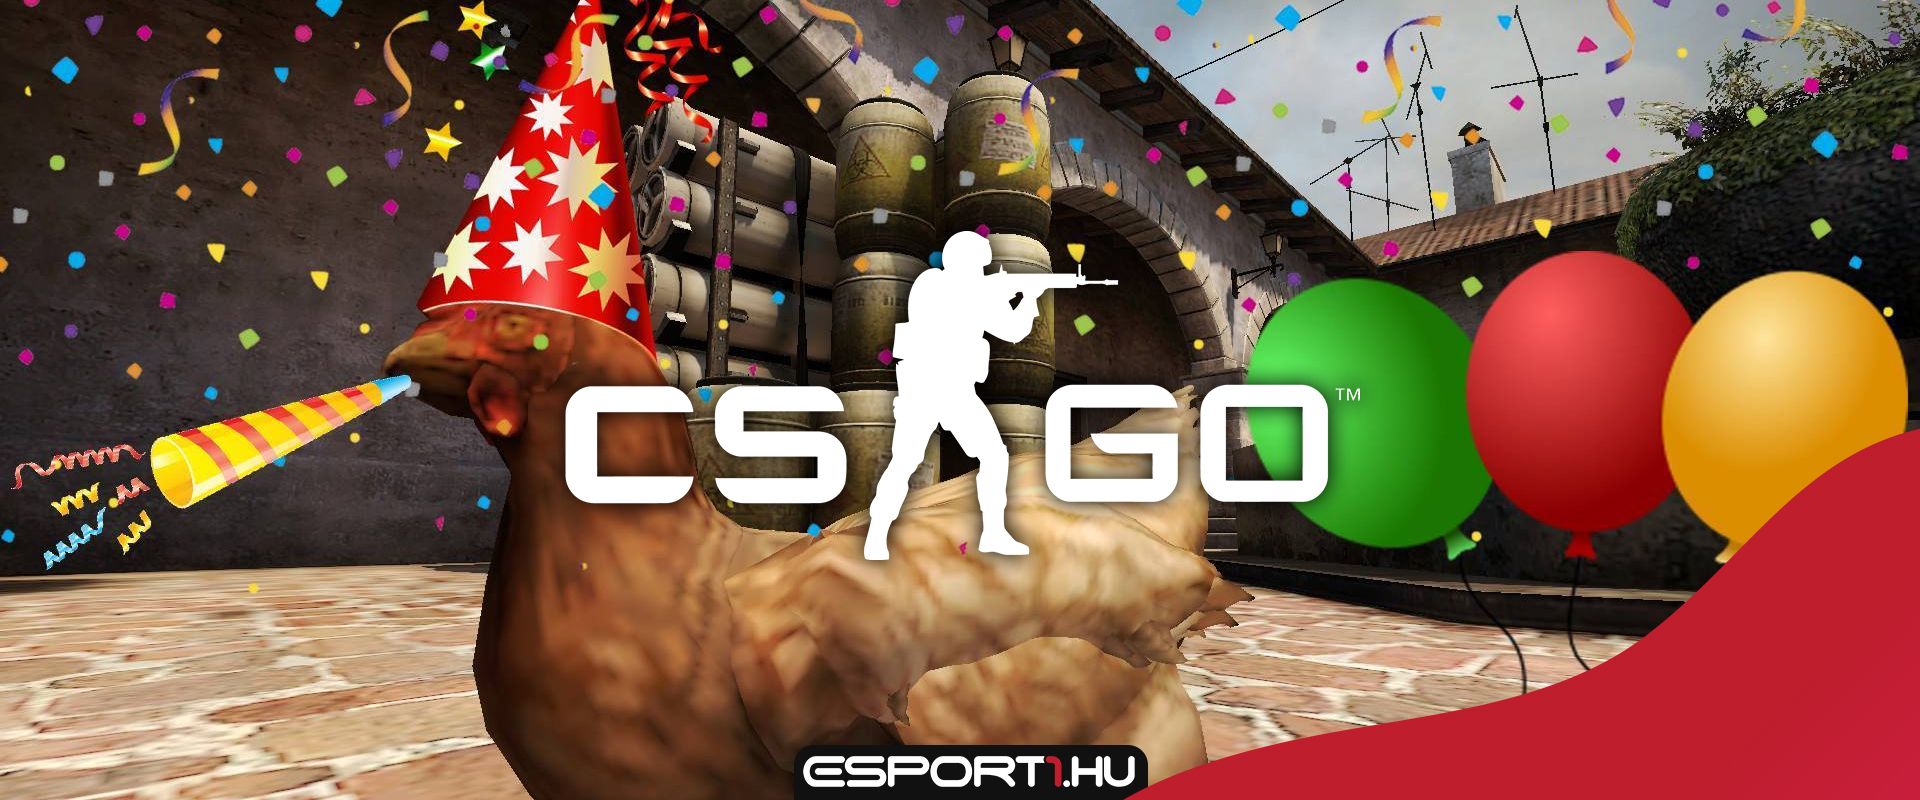 Boldog születésnapot CS:GO! 8 éves a legnépszerűbb FPS e-sport